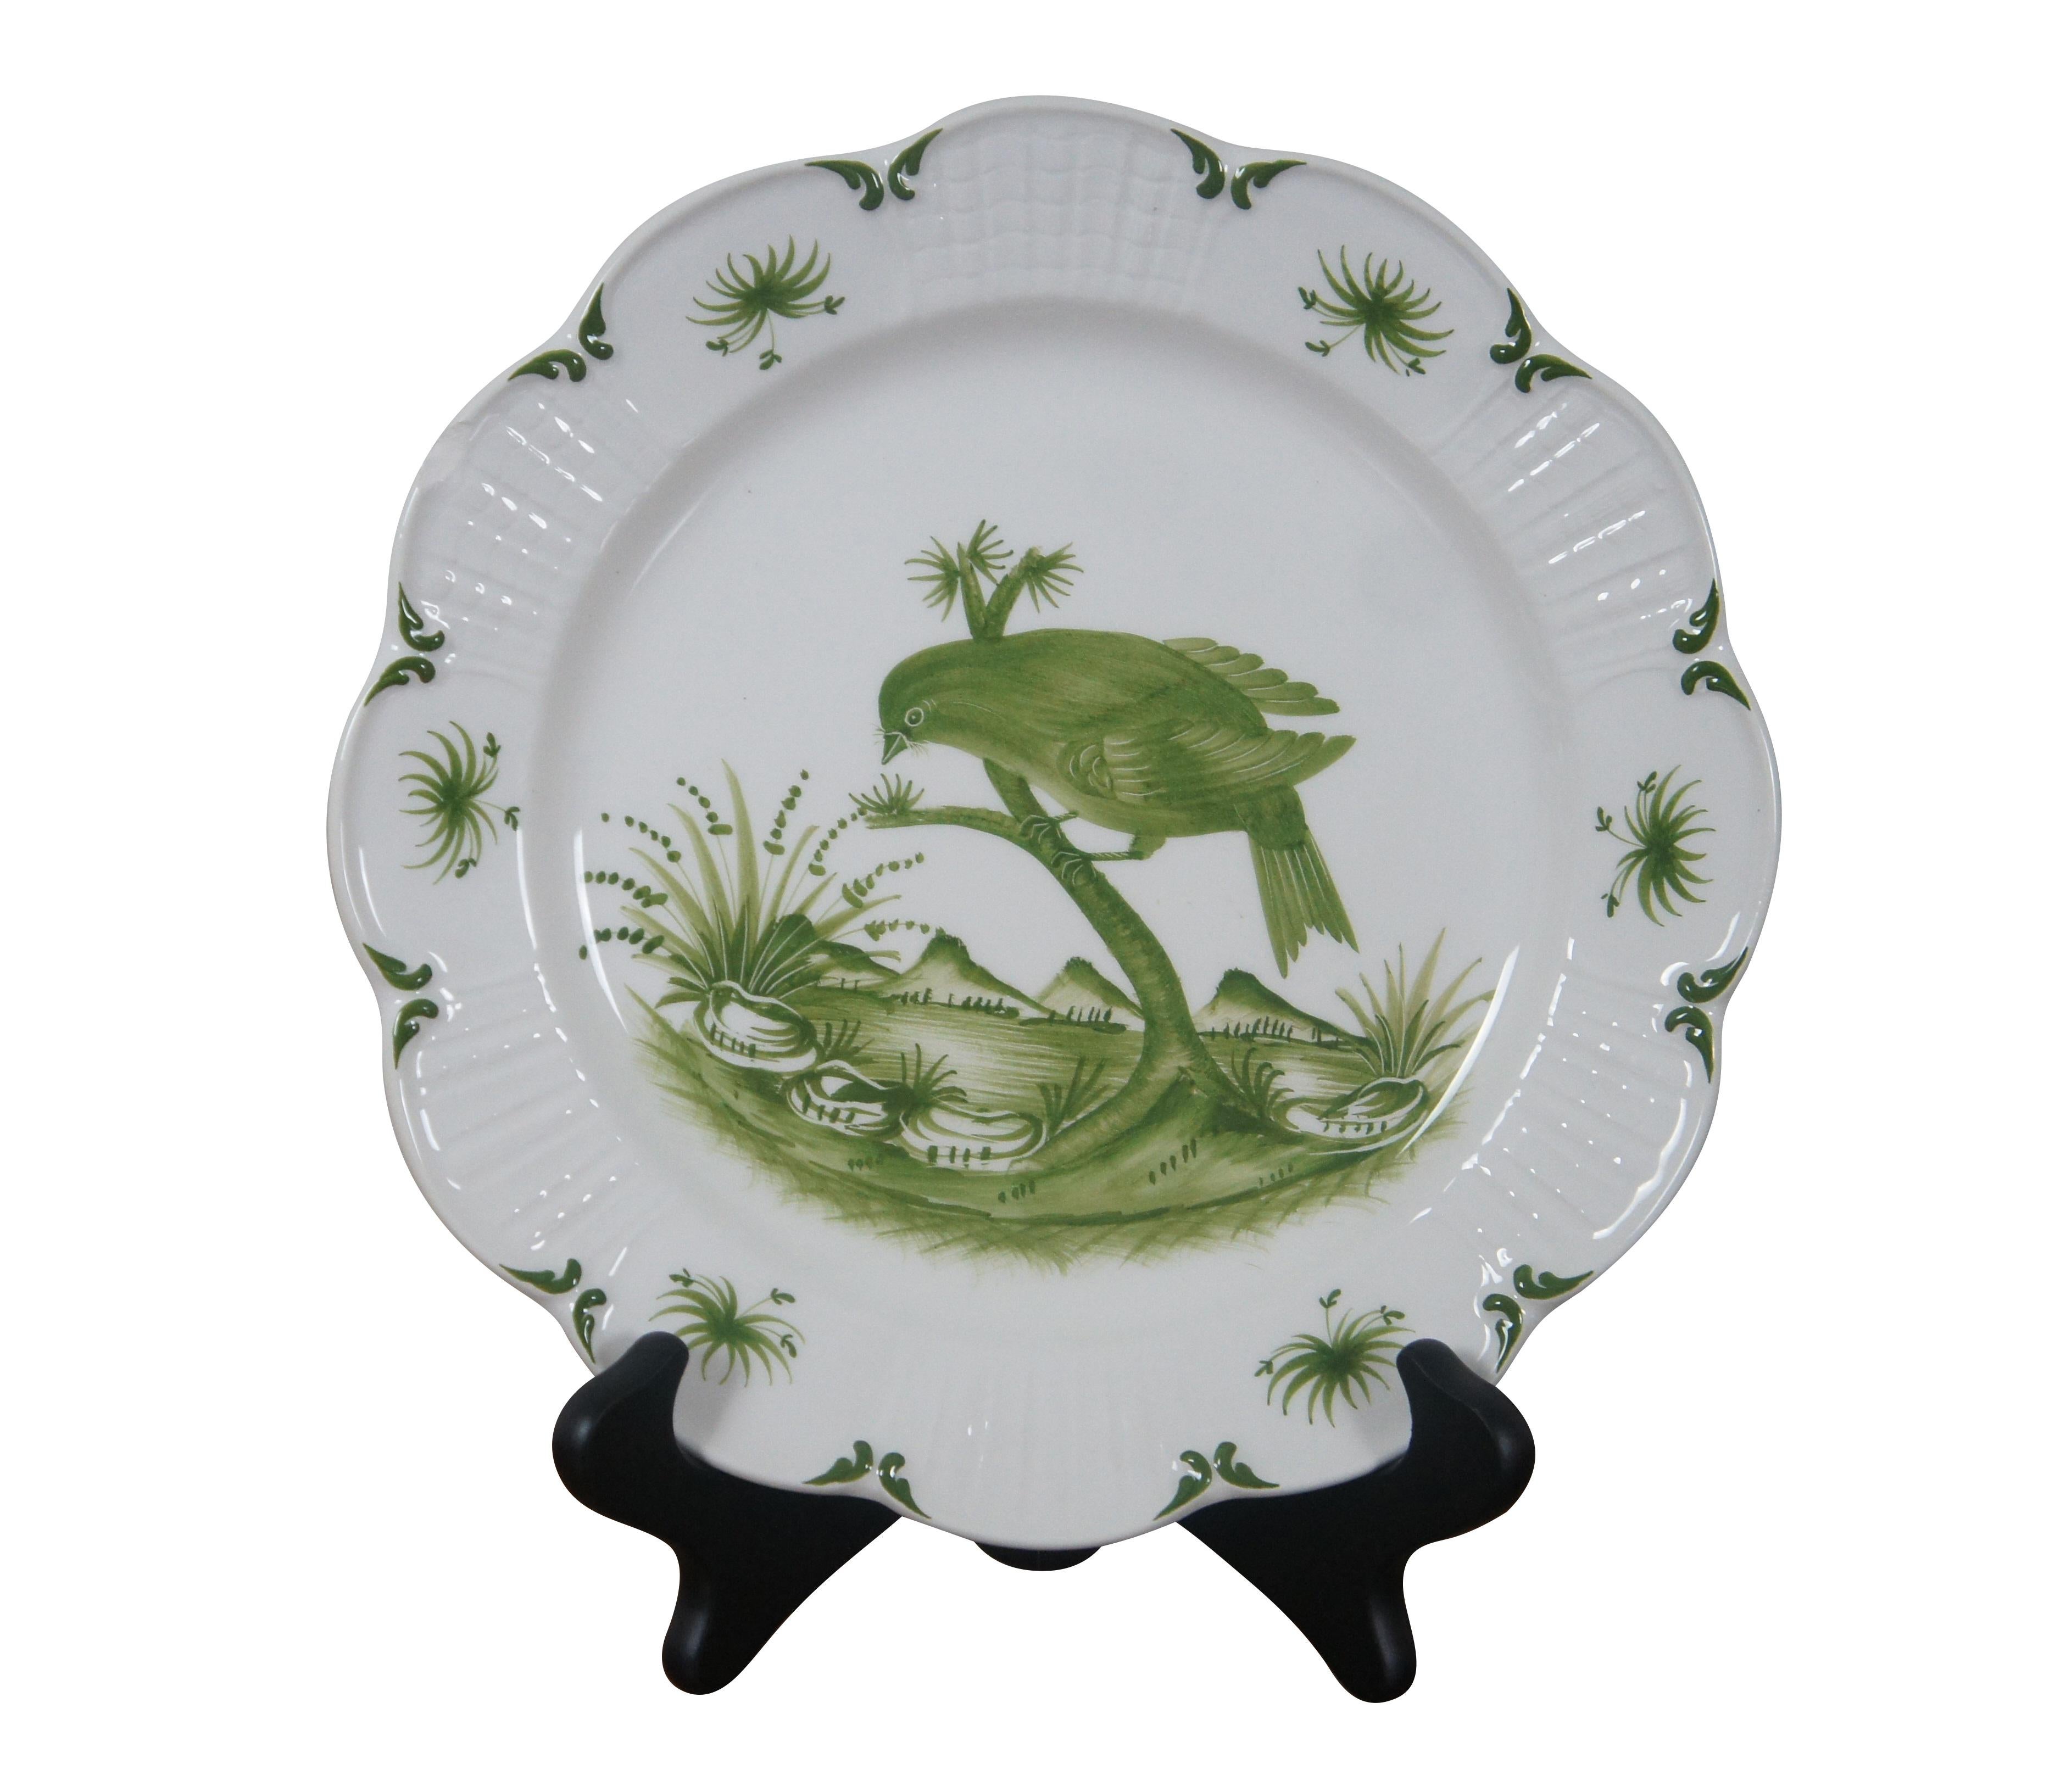 Paire d'assiettes en porcelaine italienne Vintage By Knapp & Tubbs sur pied.  Chacune est peinte à la main en vert sur fond ivoire.  Fabriqué par Este porcelaine pour Baker.

